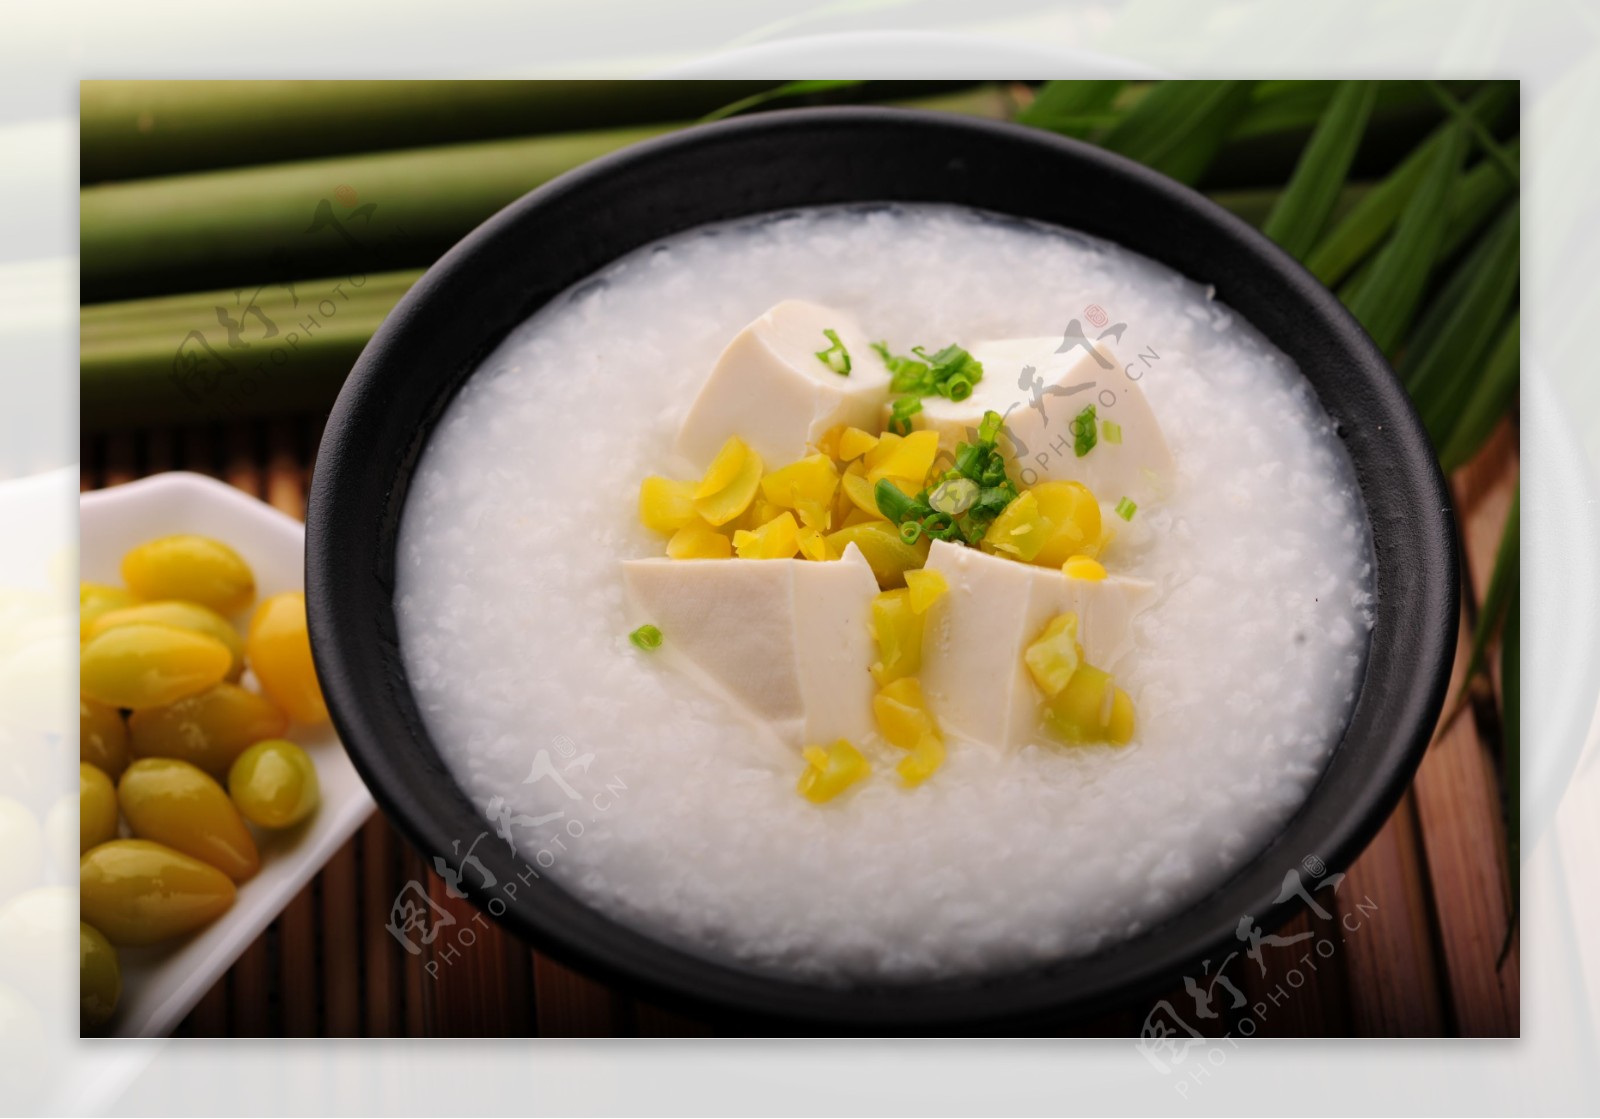 糖質ゆる制限メシ「豆腐粥」の作り方【筋肉料理人】 - メシ通 | ホットペッパーグルメ